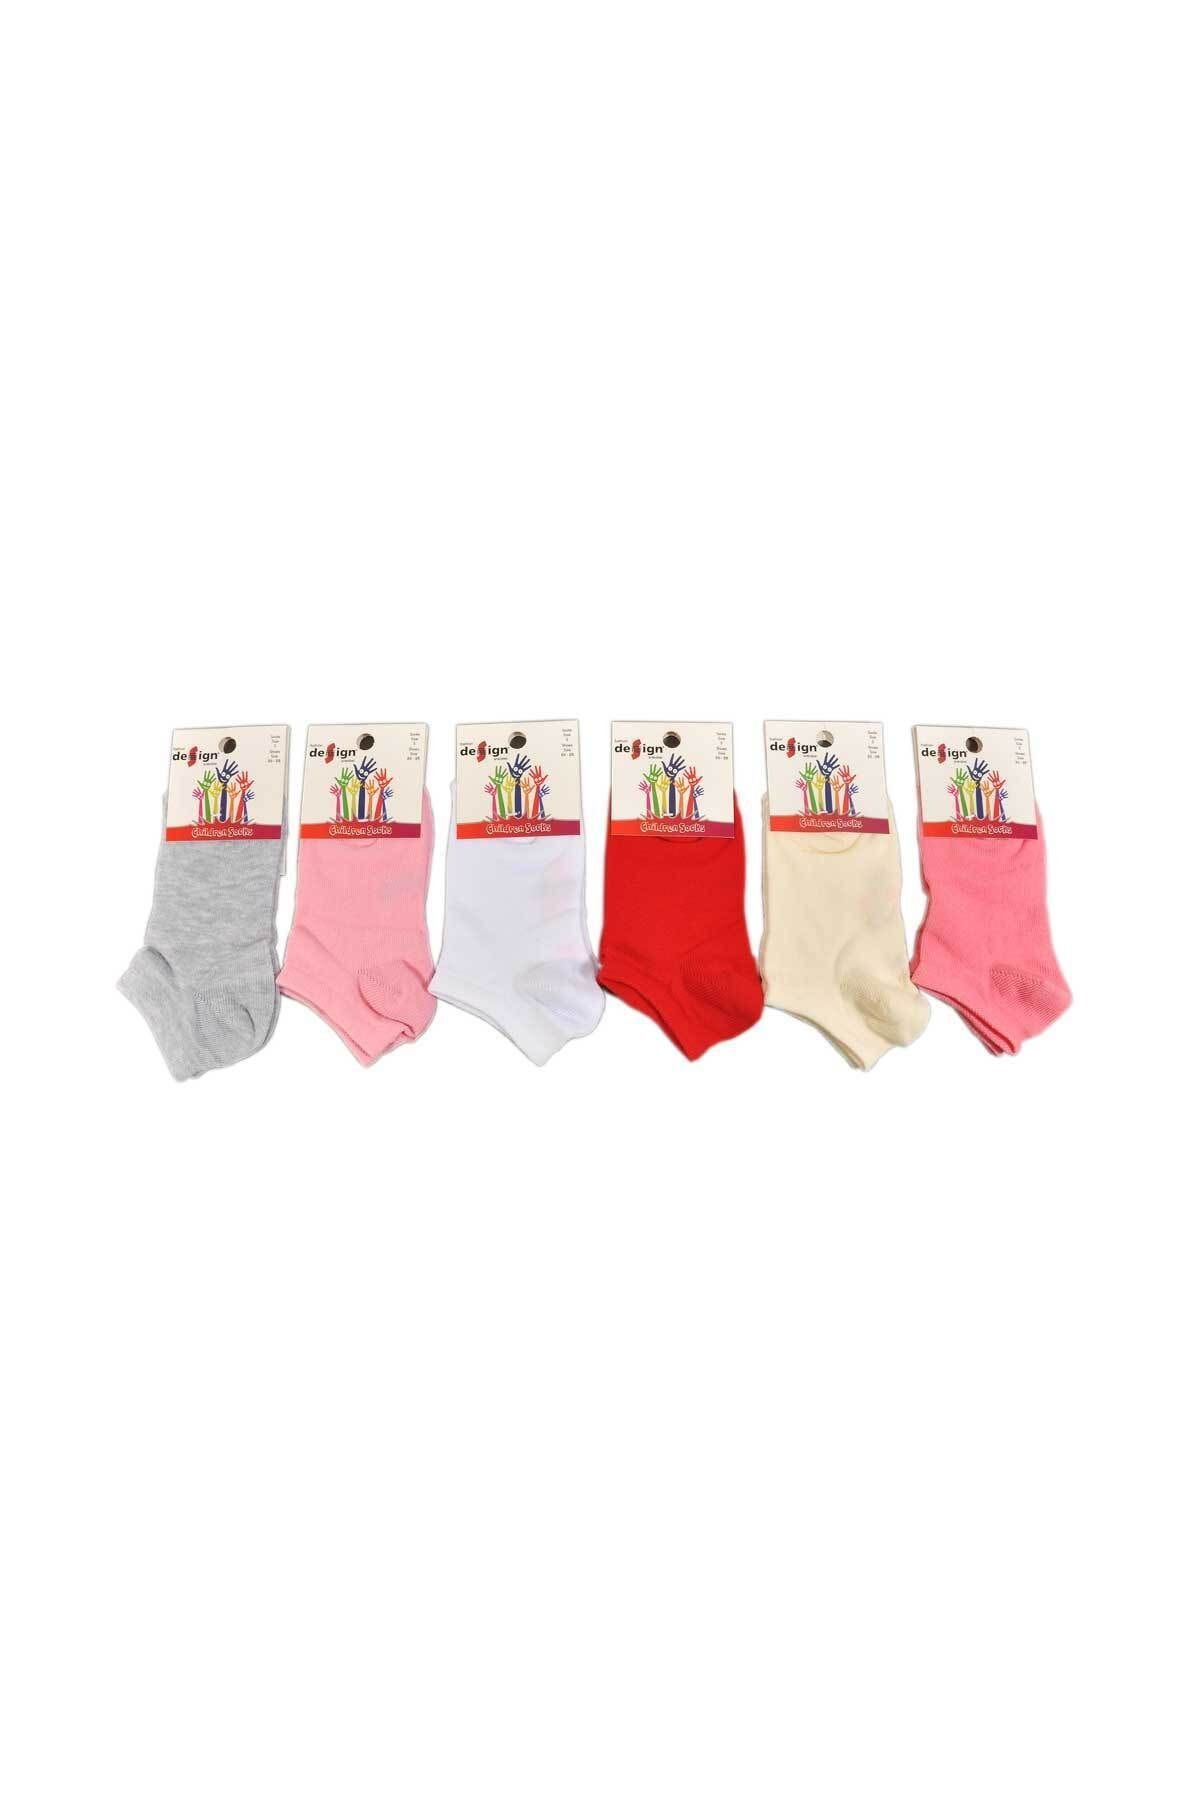 Design Socks Çocuk Asorti Patik Çorabı (6 Çift) 1 - 11 Yaş - Desen Çorap